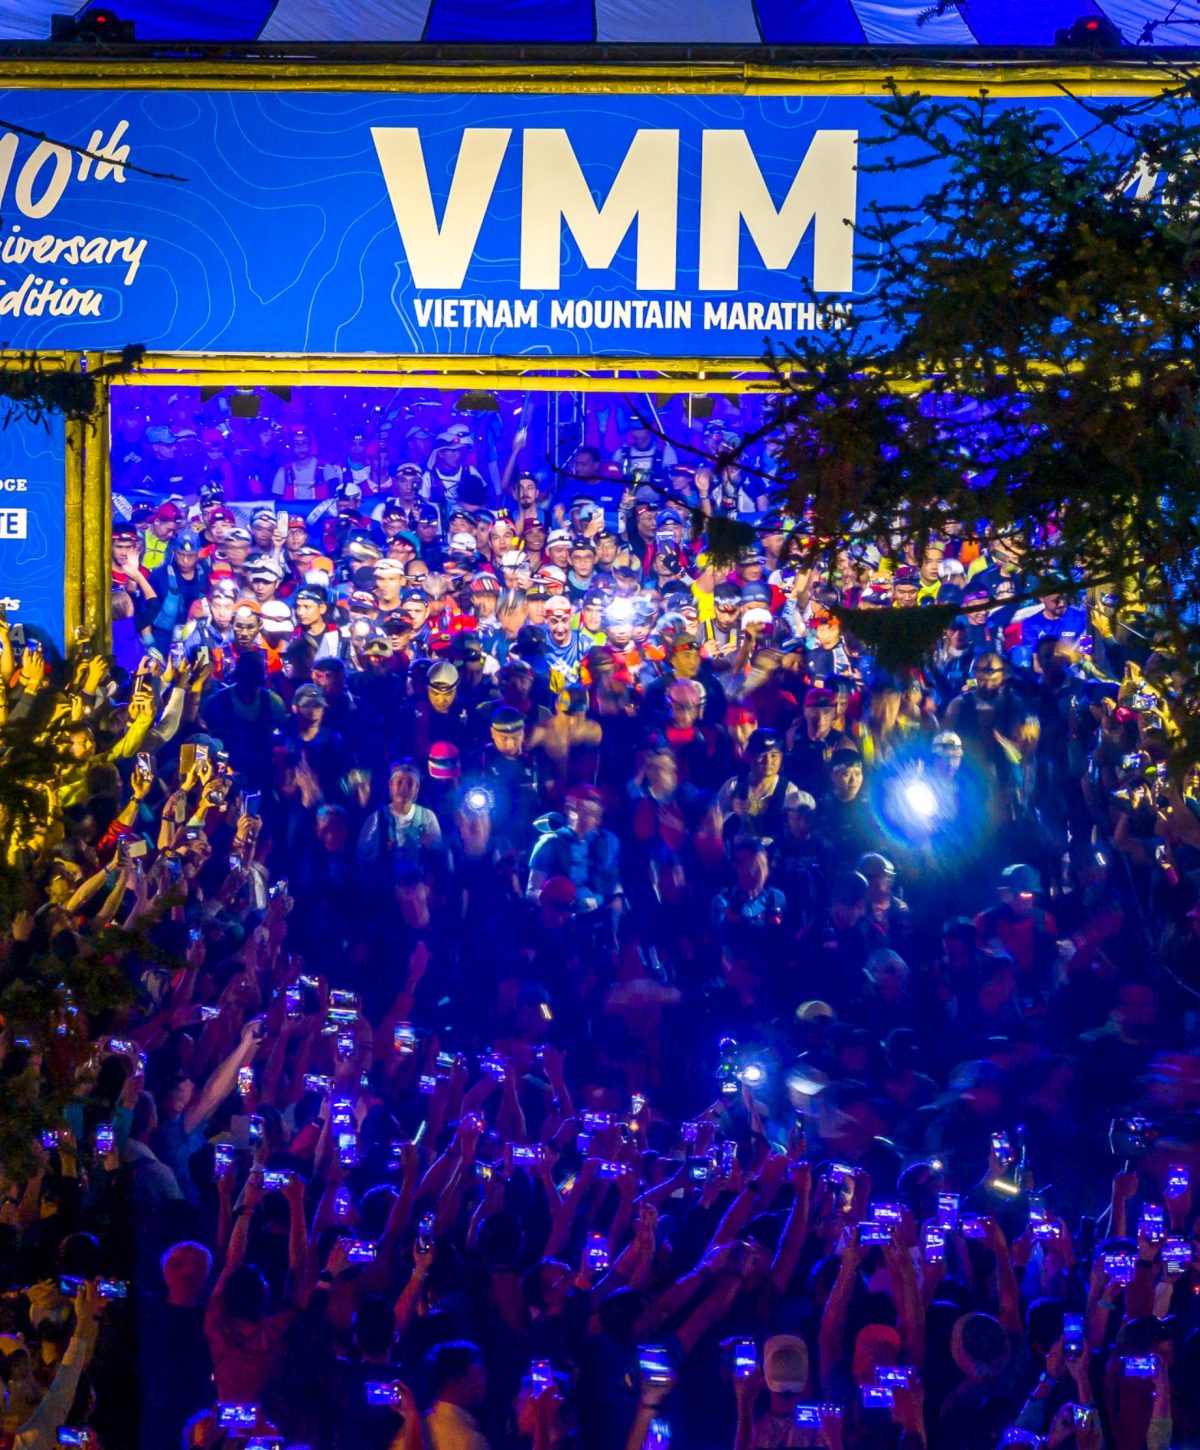 VMM - Vietnam Mountain Marathon 100k start